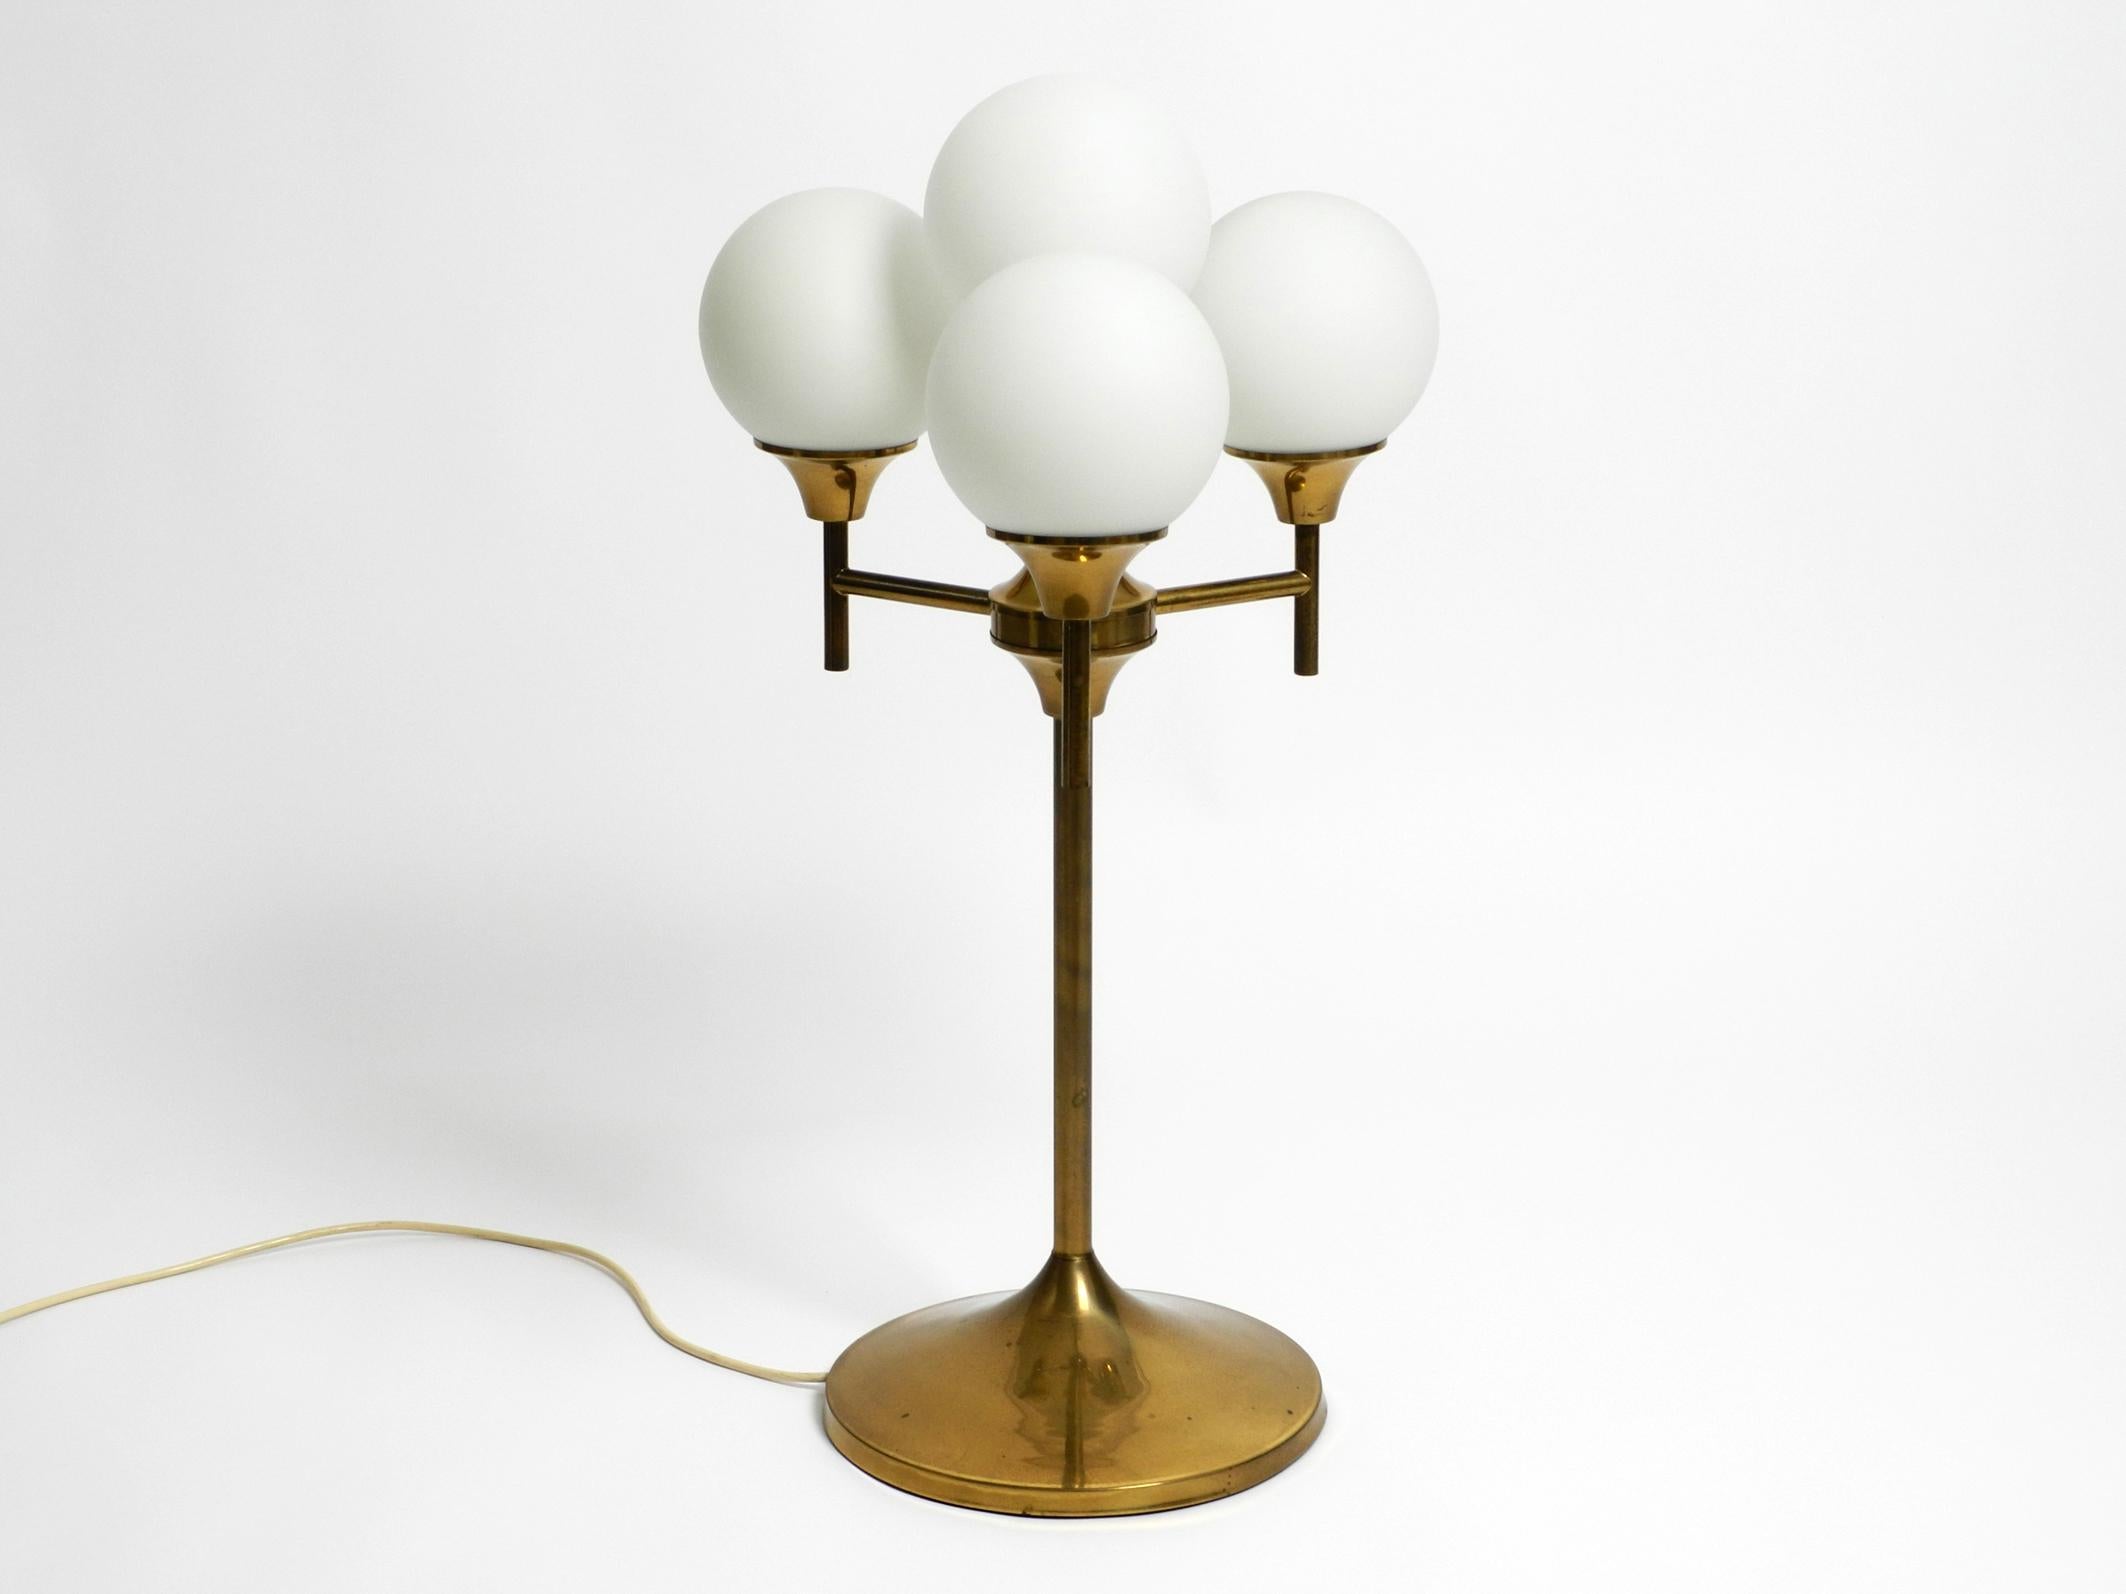 Extraordinaire lampe de table ou de sol en laiton lourd des années 1960.
Le fabricant est Kaiser Leuchten. Fabriqué en Allemagne.
Les abat-jour sont constitués de 4 sphères en verre dépoli blanc. Cela donne une très belle lumière douce.
Superbe